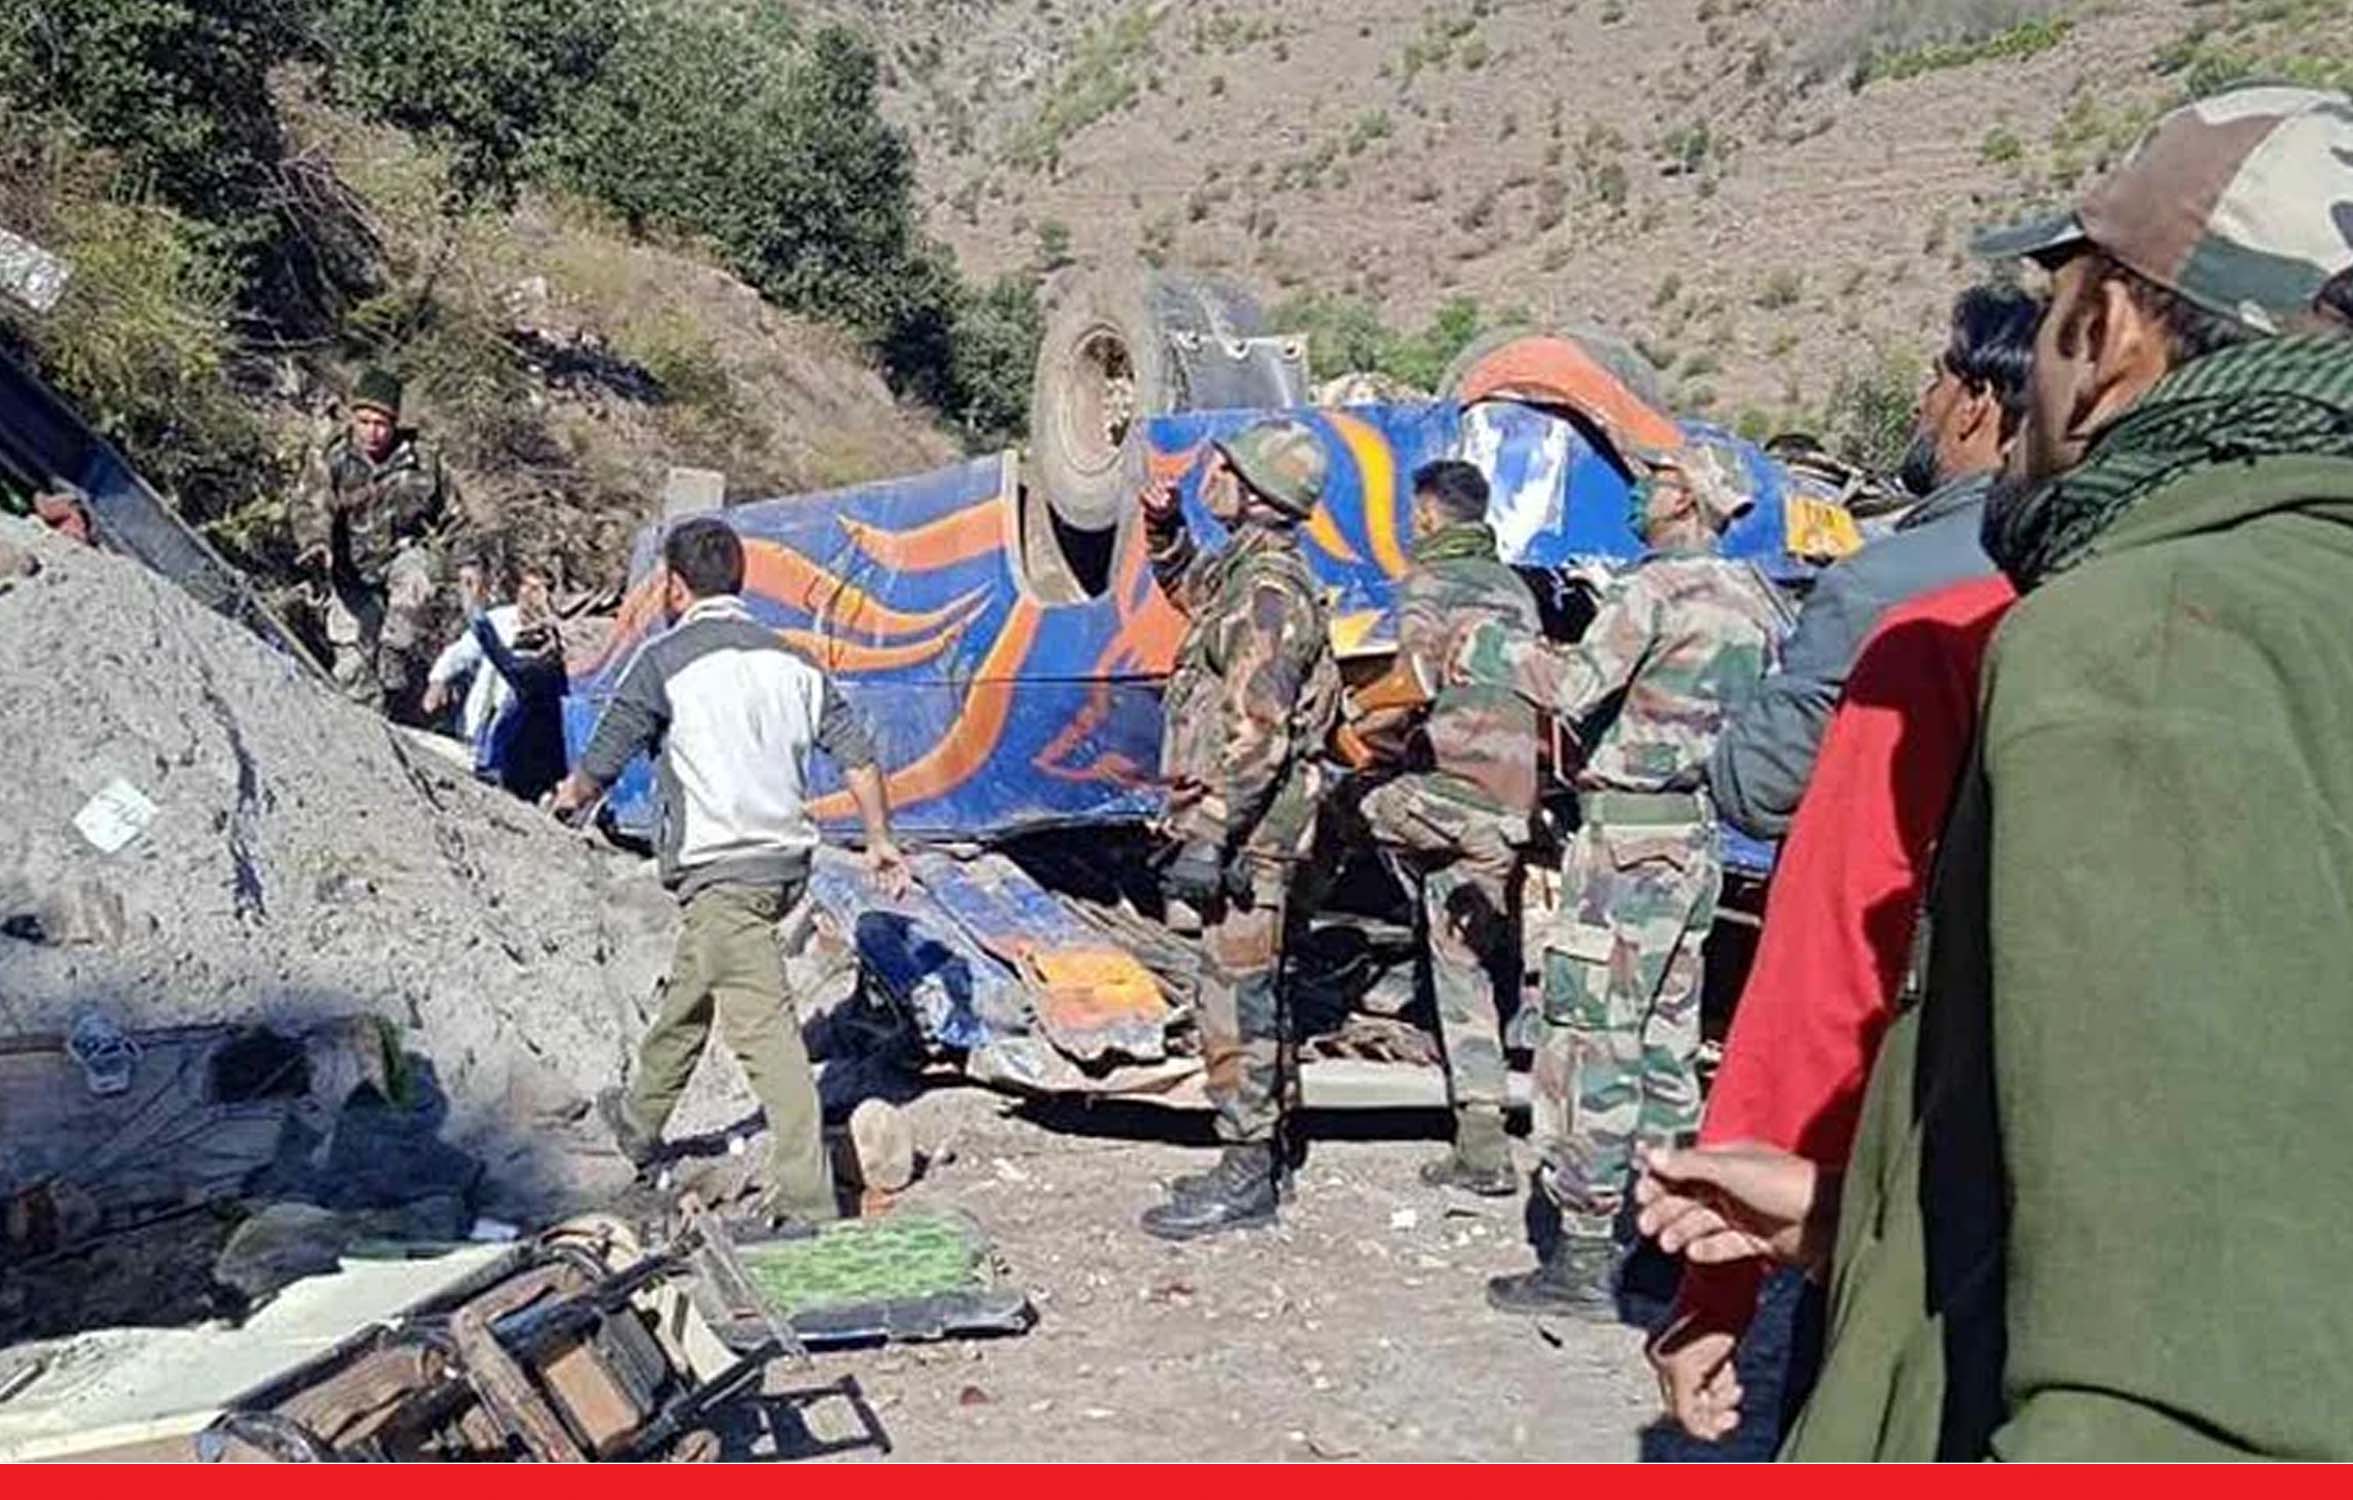 जम्मू-कश्मीर: खाई में गिरी बस, 8 की मौत, कई घायल, PM मोदी ने जताया दुख